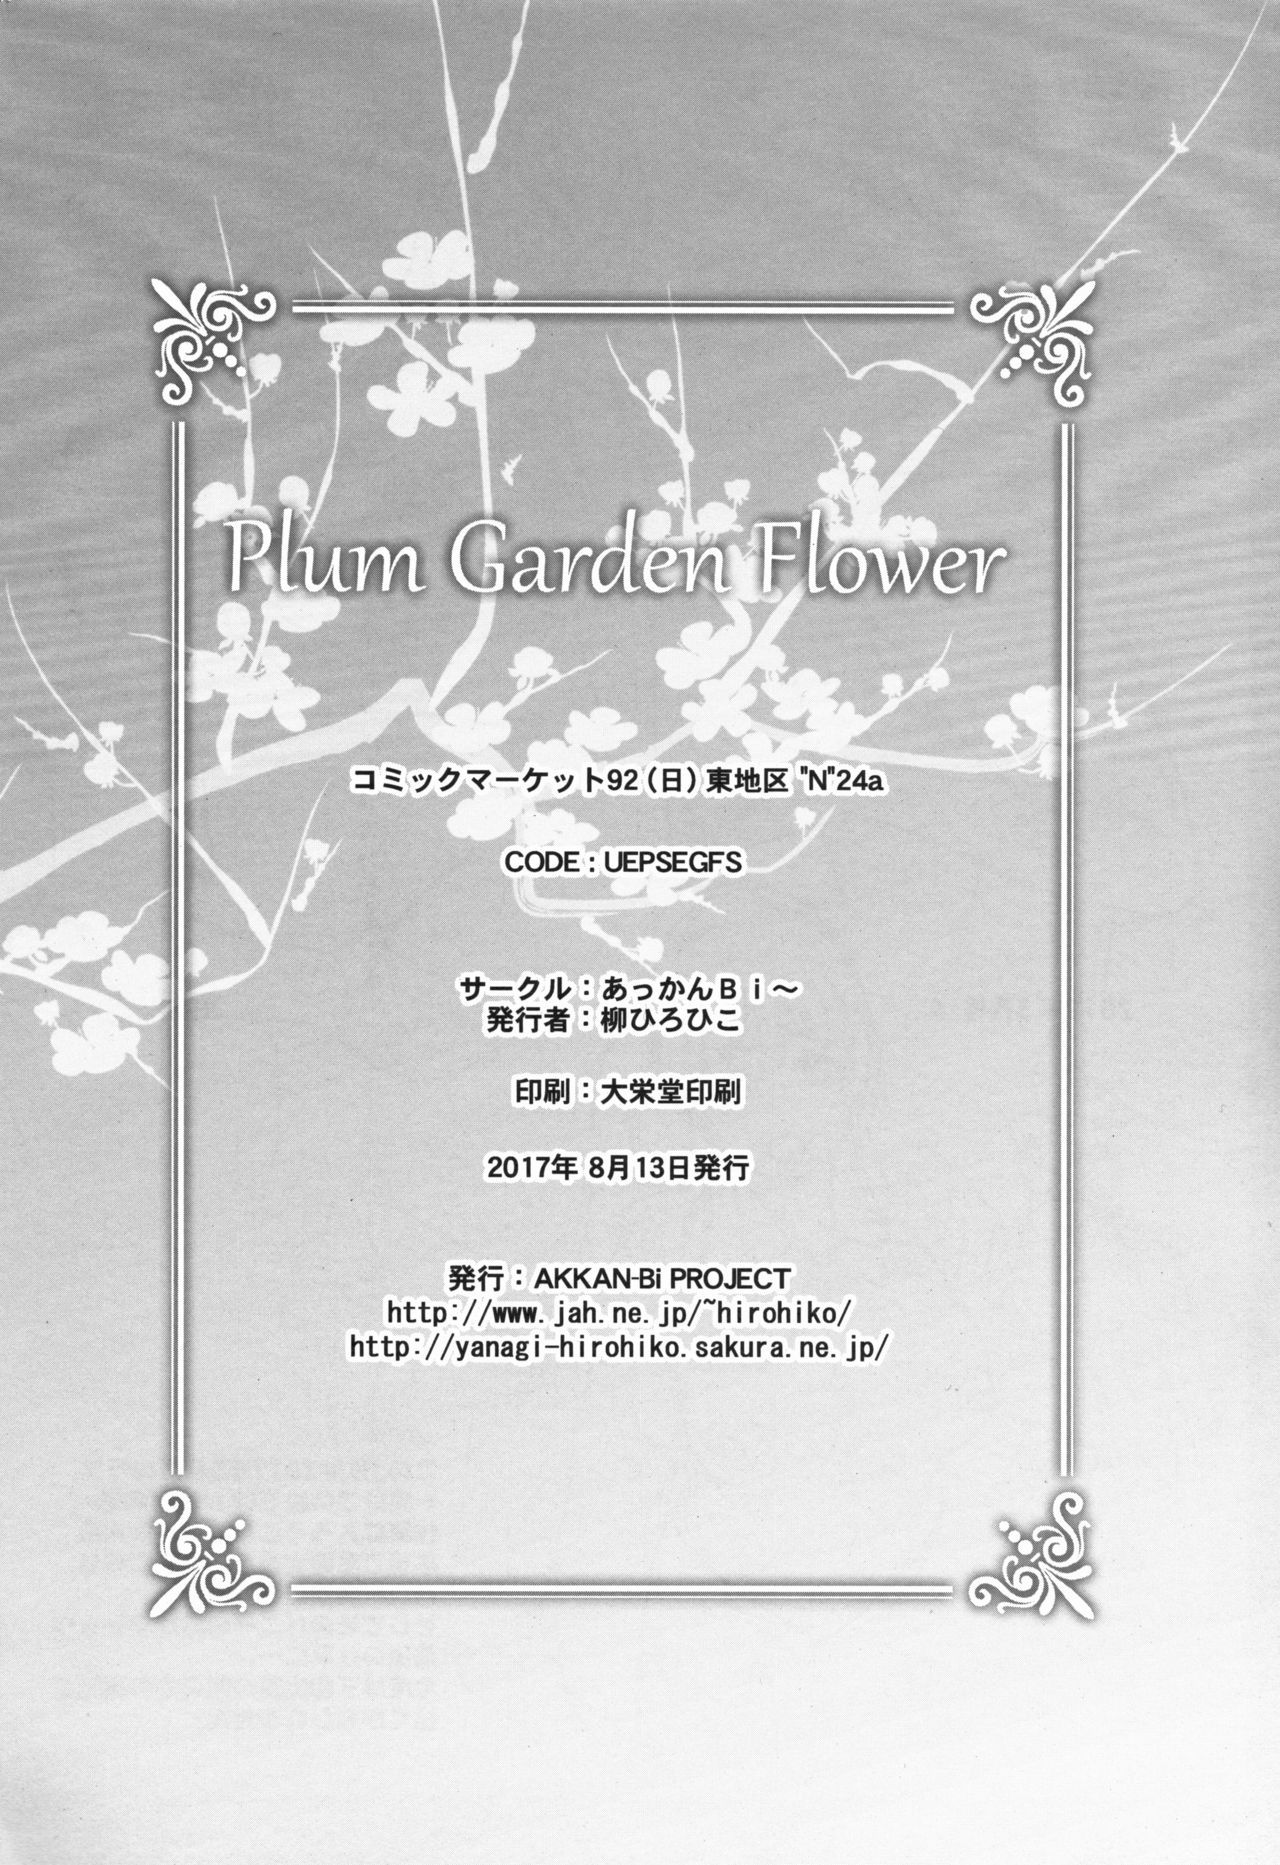 プラムガーデンフラワー|梅园之花